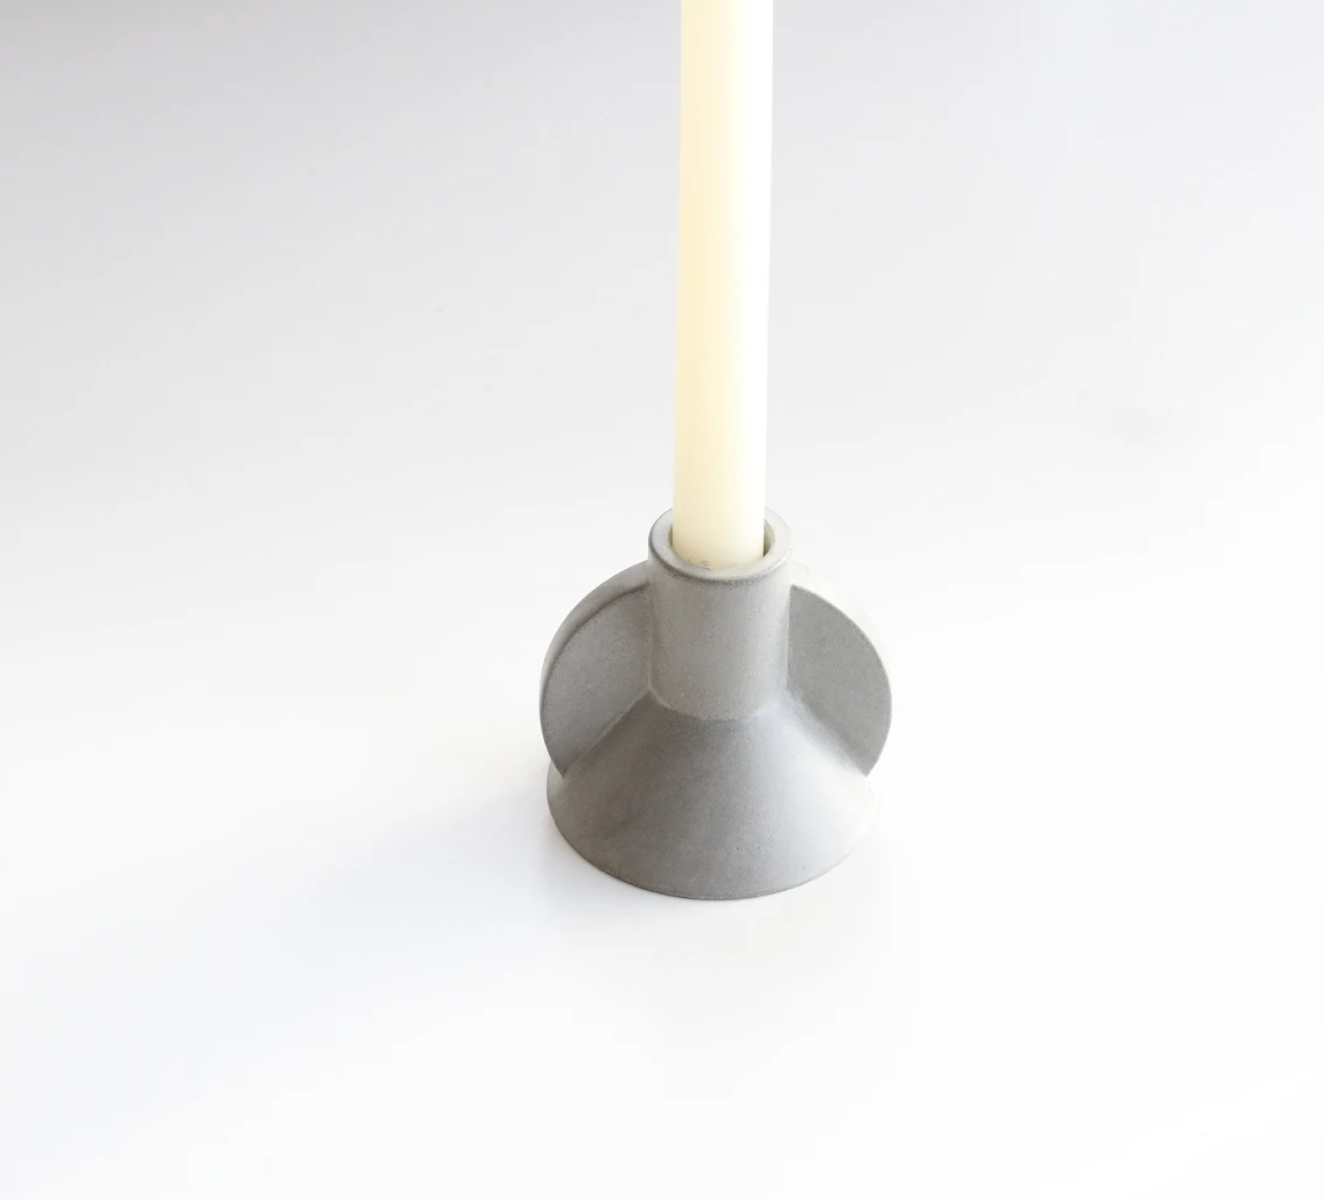 Sculptural Candlestick Holder Mold